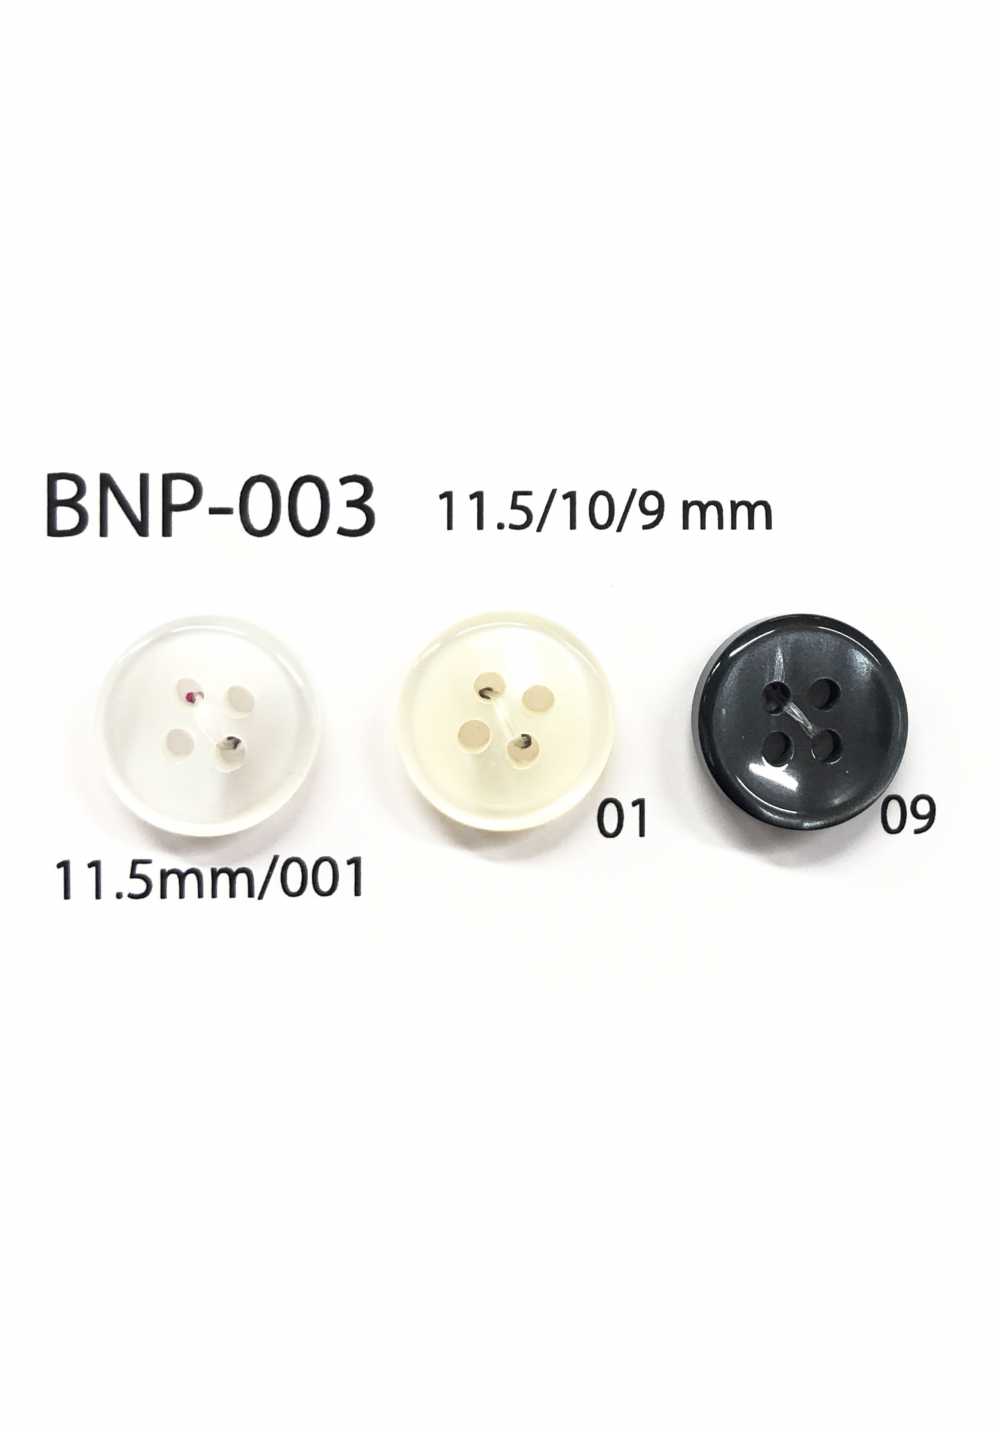 BNP-003 Botón De Biopoliéster De 4 Orificios IRIS